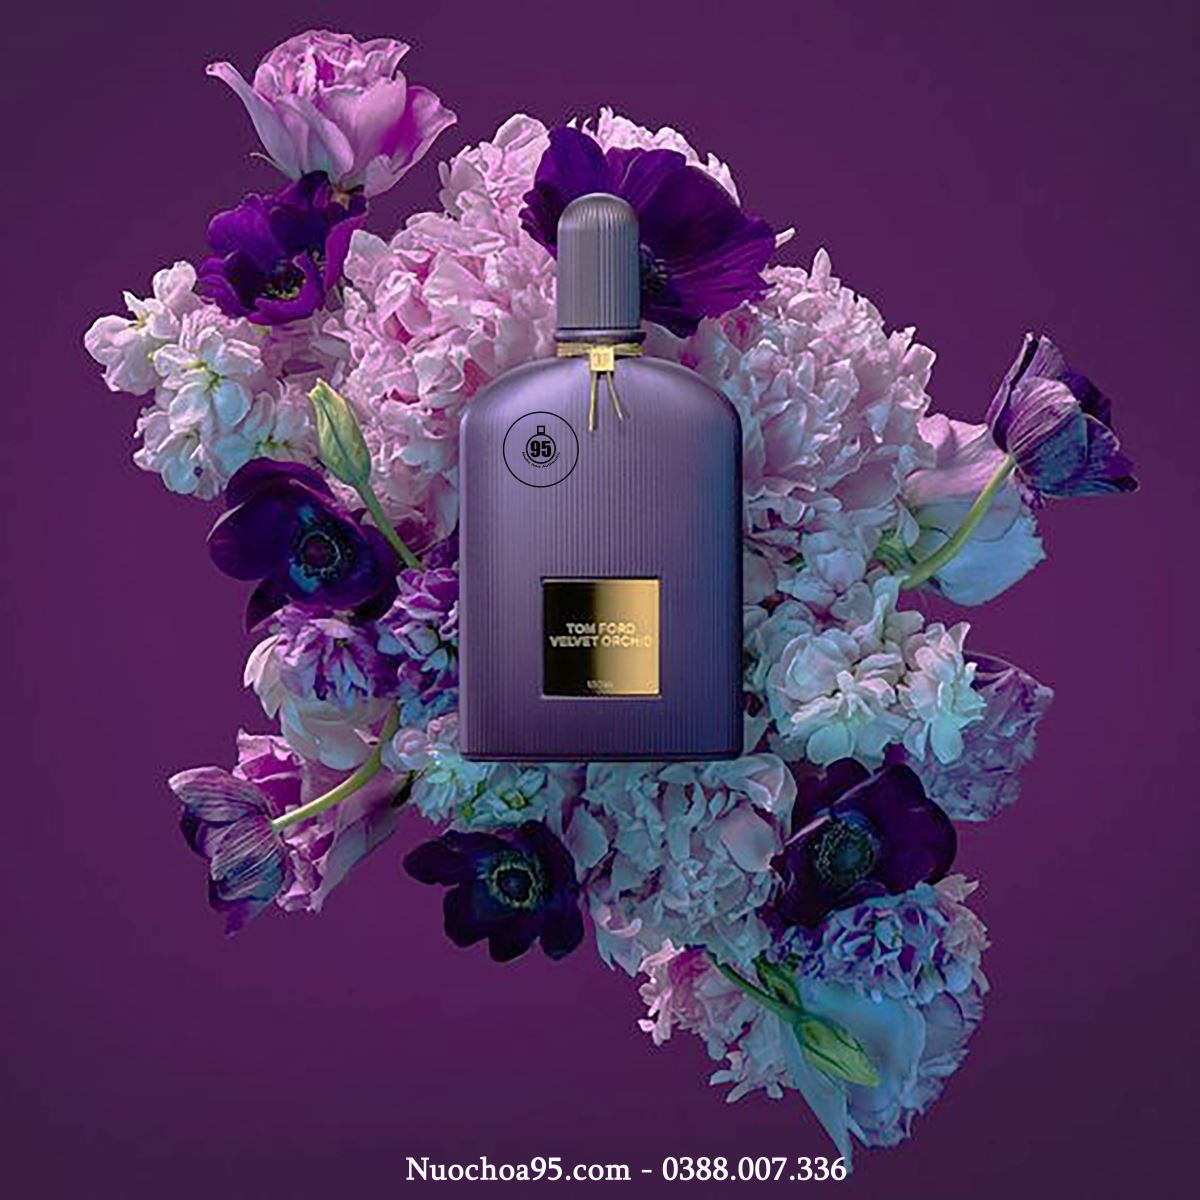 Nước hoa nữ Velvet Orchid của hãng TOM FORD